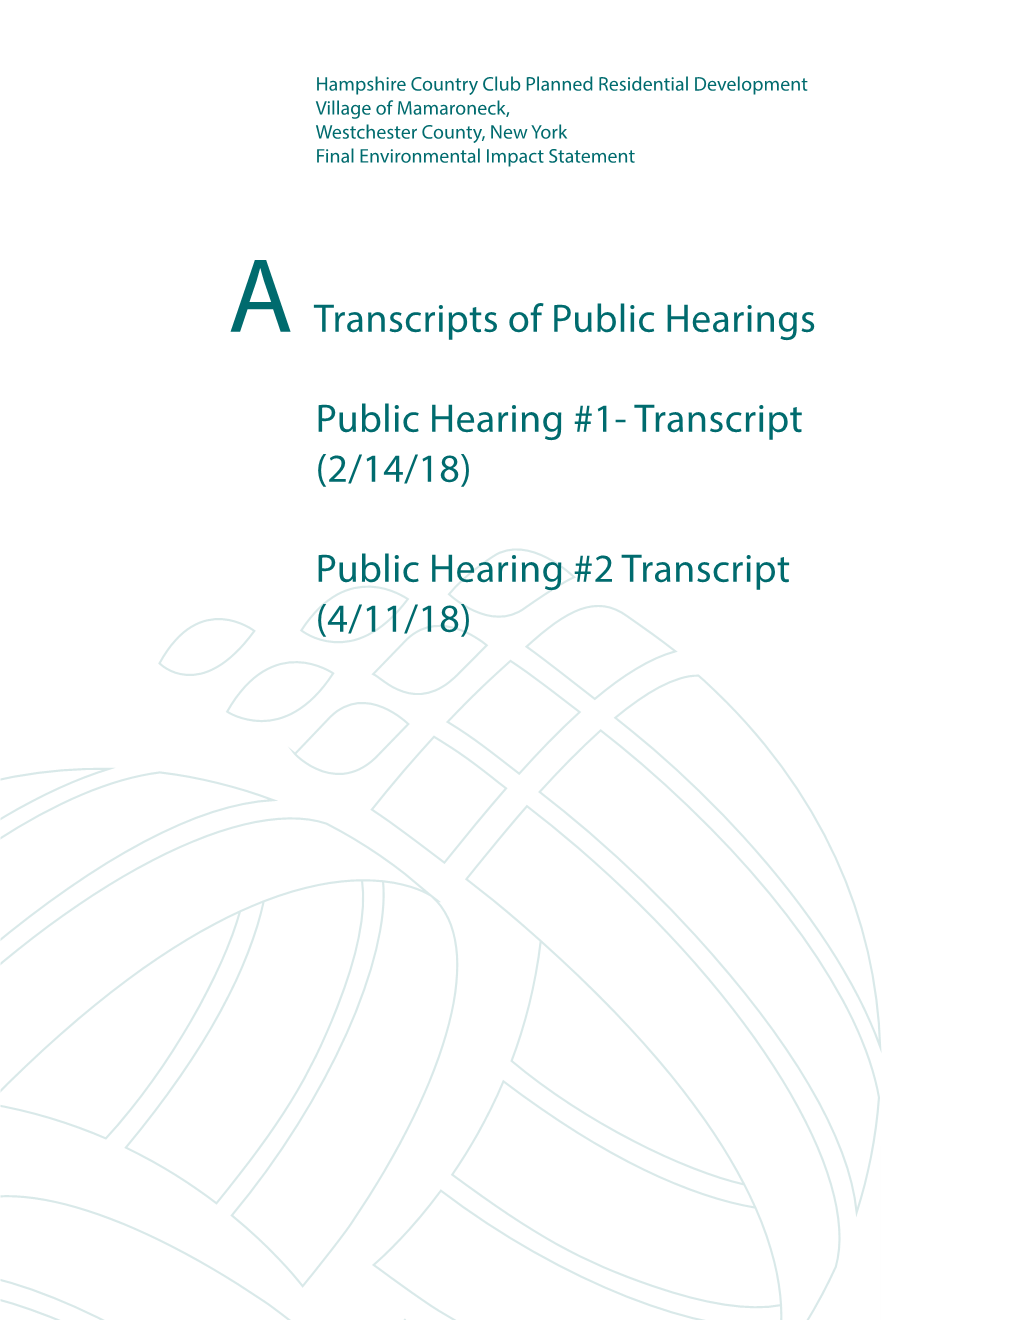 Public Hearing #2 Transcript (4/11/18) 1